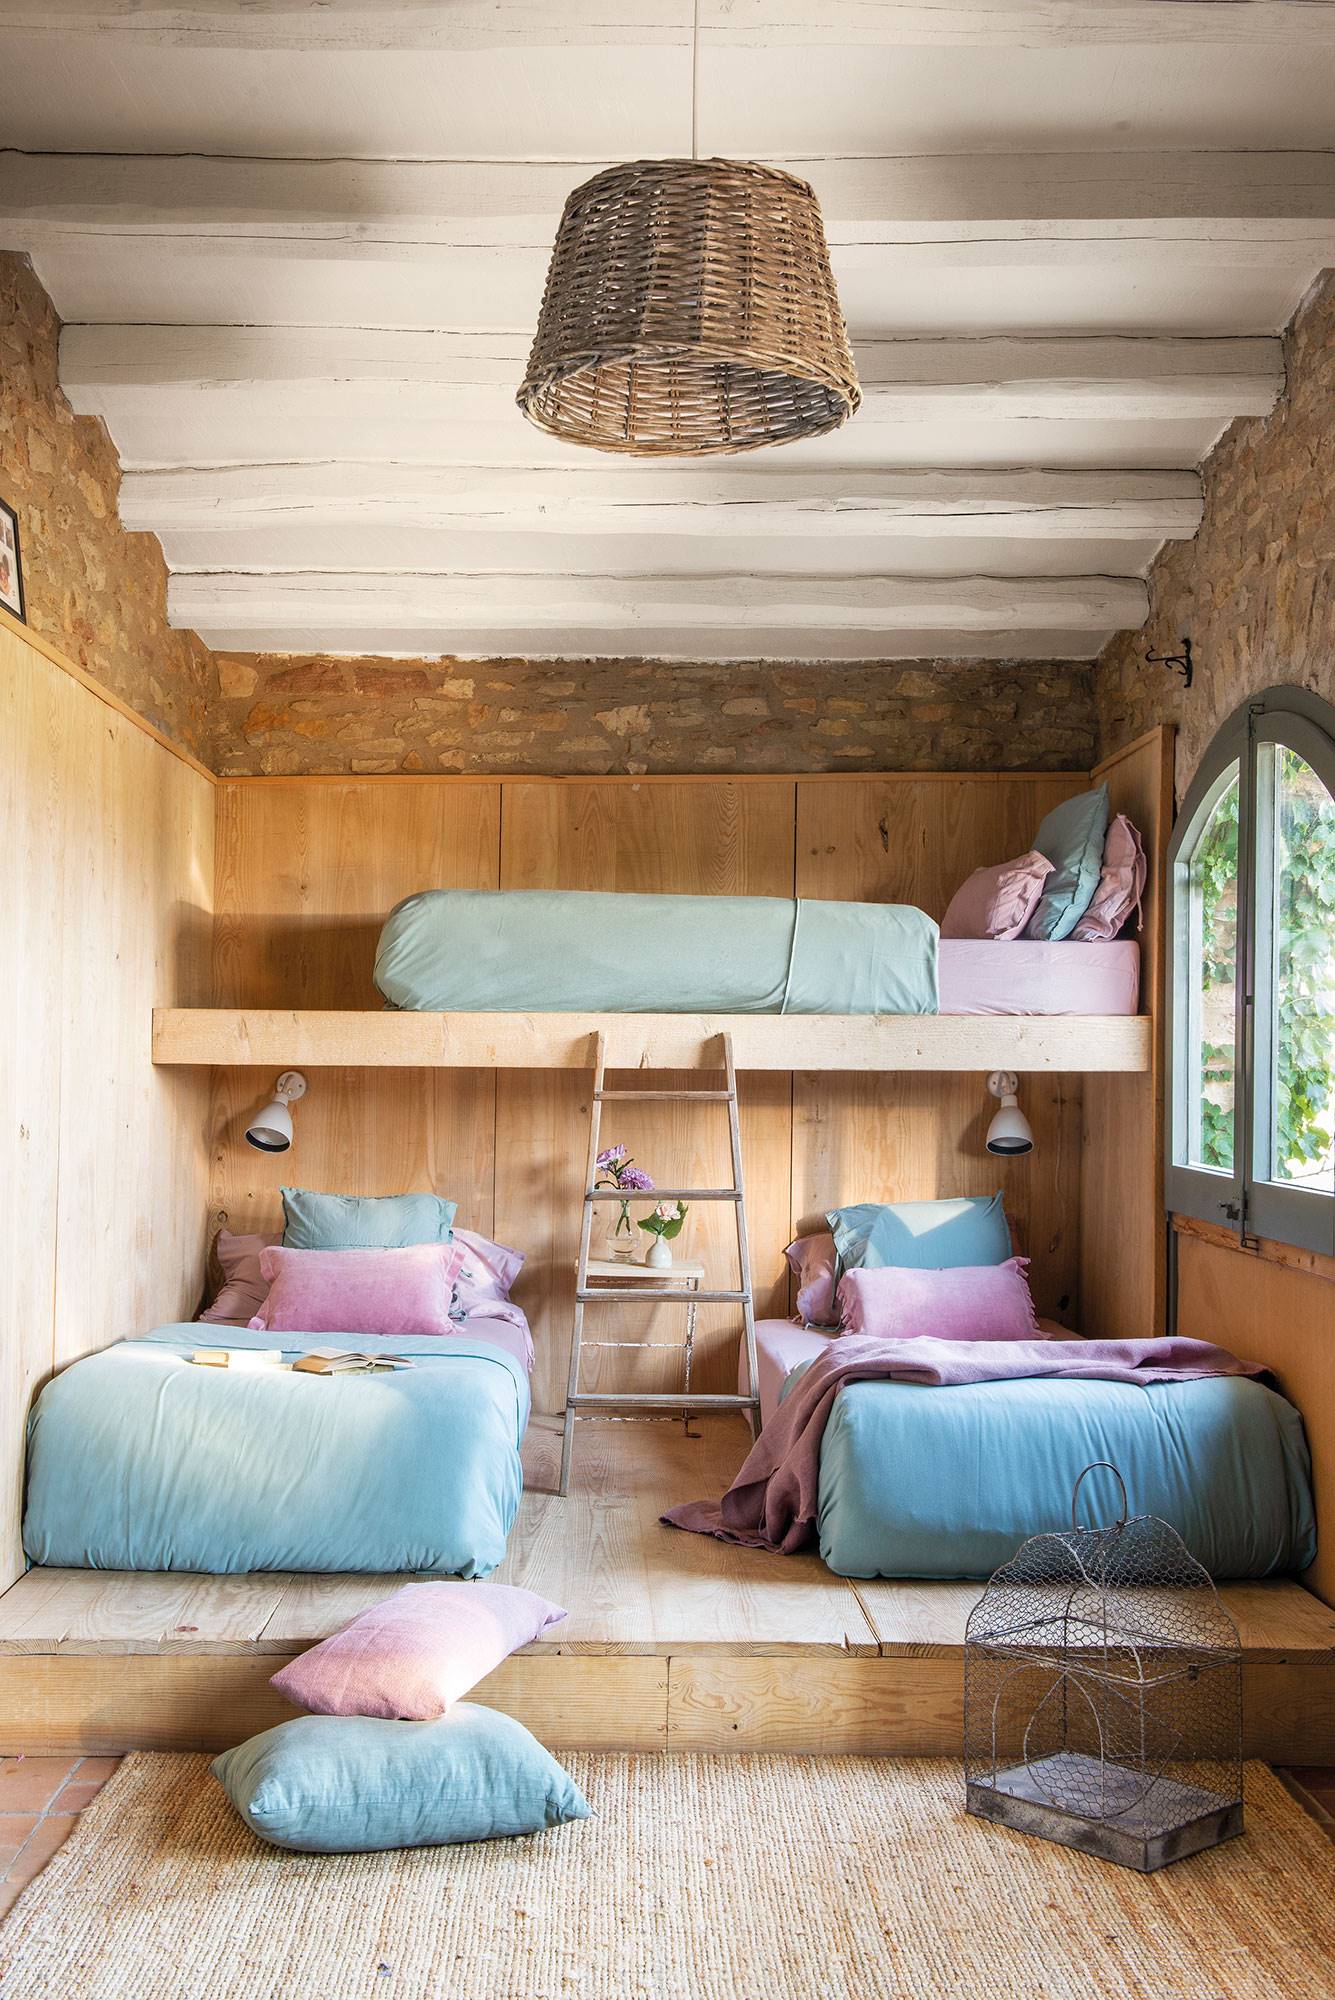 Dormitorio rústico de madera con dos camas sobre escalón y una tercera cama alta.